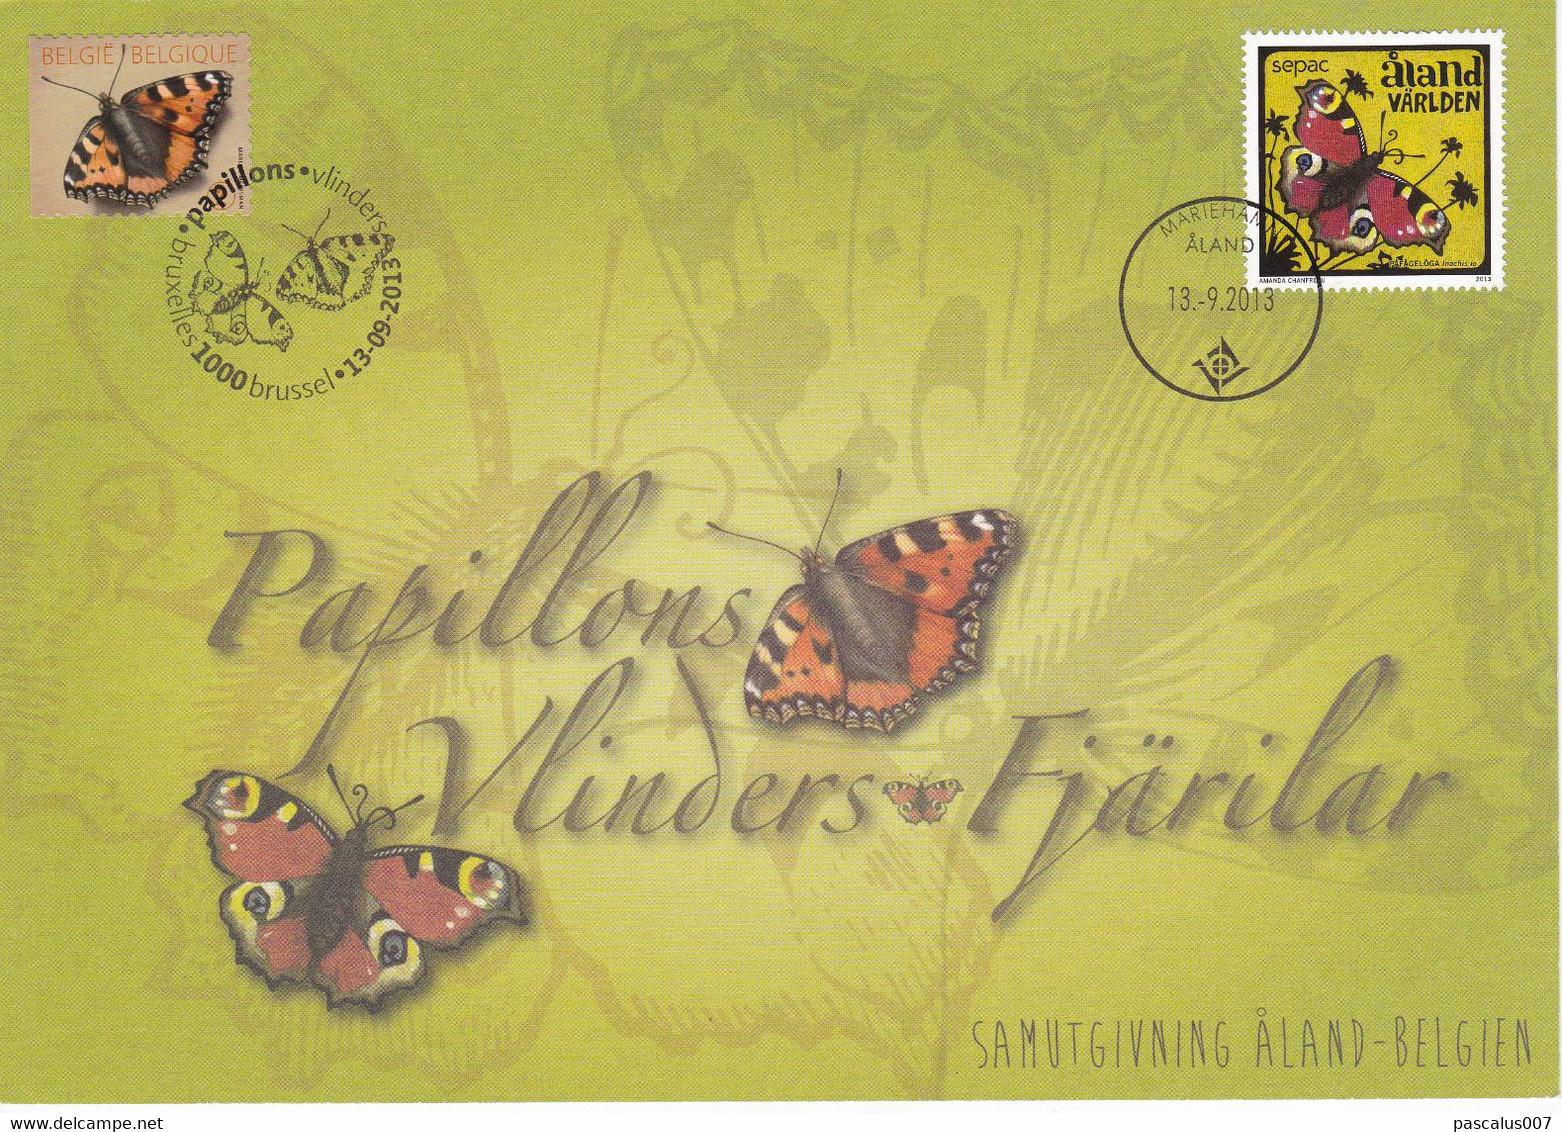 18-47 4321  EC CS HK BK 4321 FDC Emission Commune Belgique Aland  Carte Souvenir  Insecte Papillon Aglais Urticae Vlinde - Souvenir Cards - Joint Issues [HK]